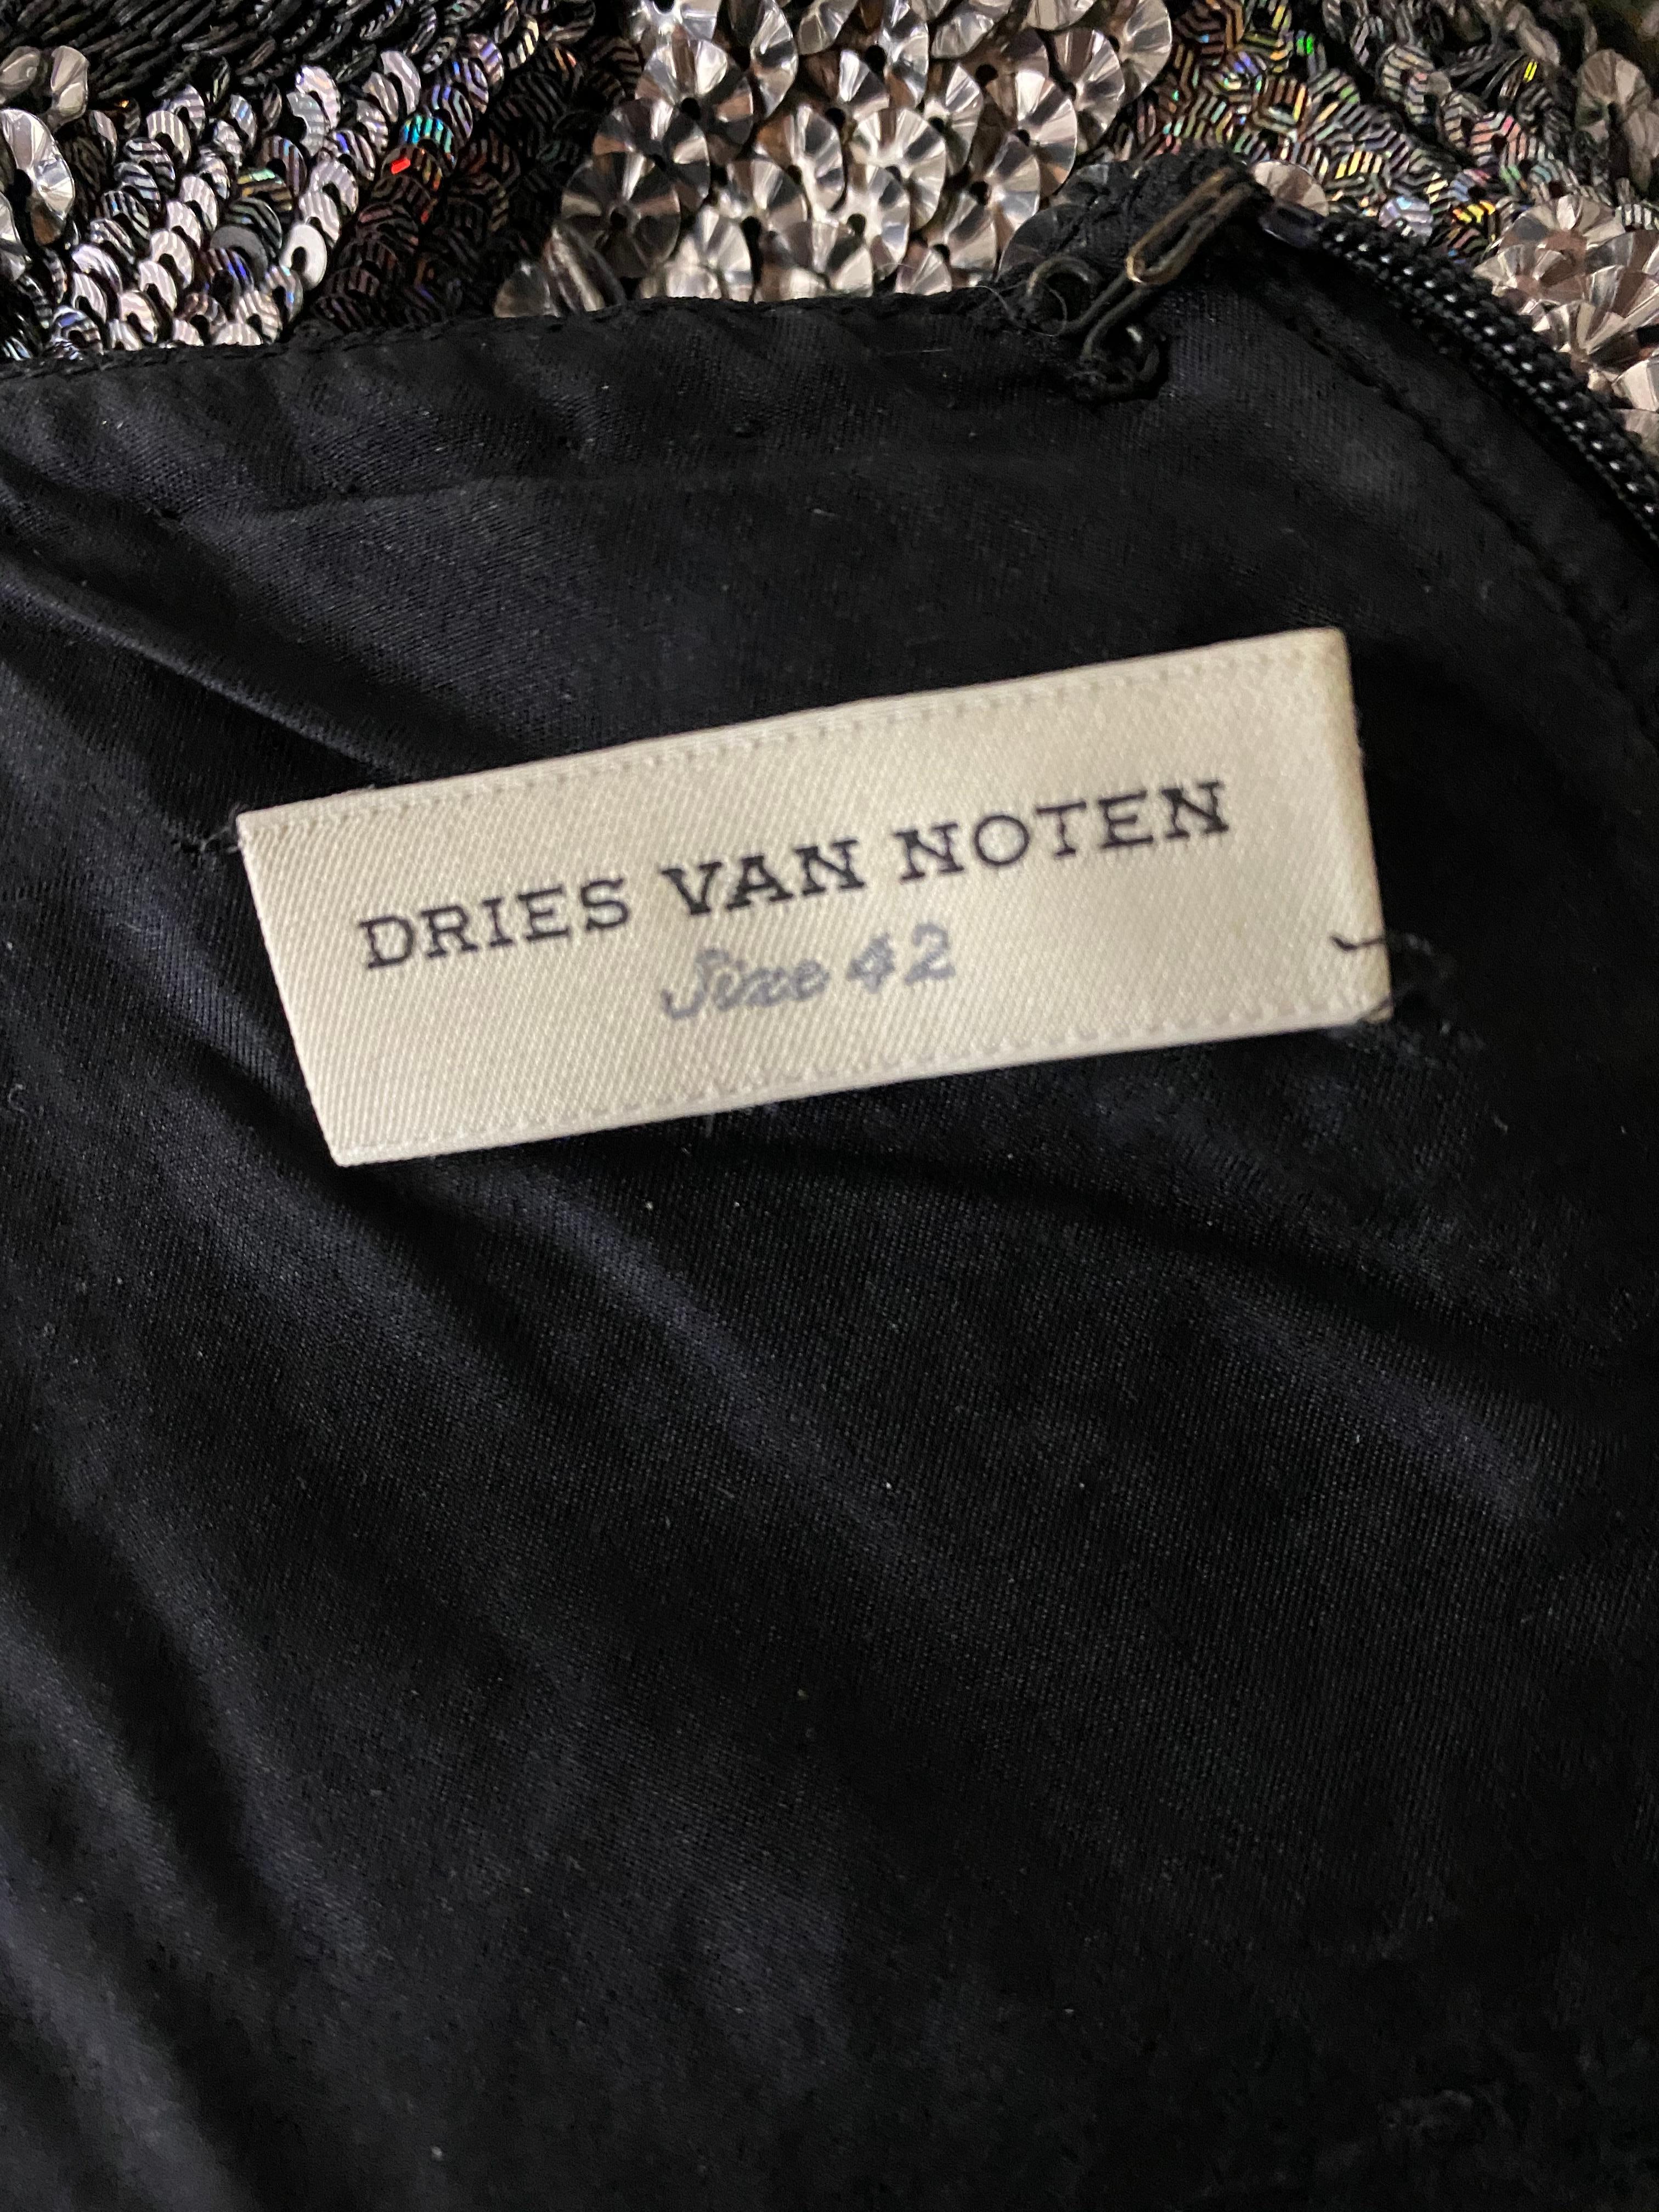 Dries Van Noten Black and Grey Metallic Sequin Evening Dress Size 42 2